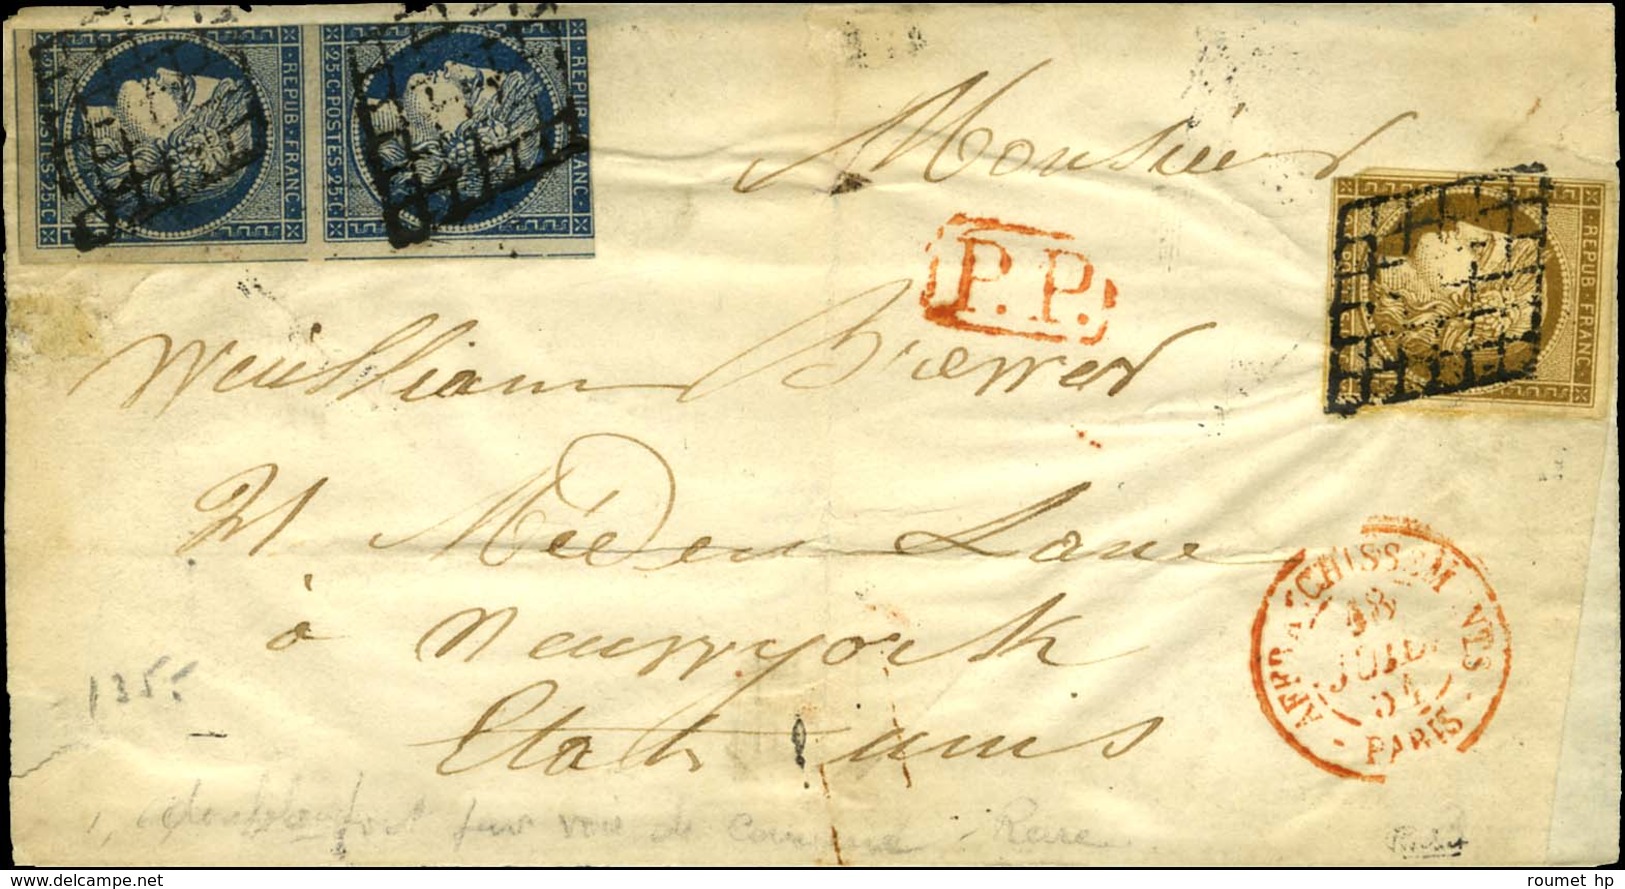 Grille / N° 1 (def) + 4 Paire (def) Càd Rouge AFFRANCHISSEMENTS / PARIS Sur Devant De Lettre Pour New York. 1861. - B /  - 1849-1850 Ceres